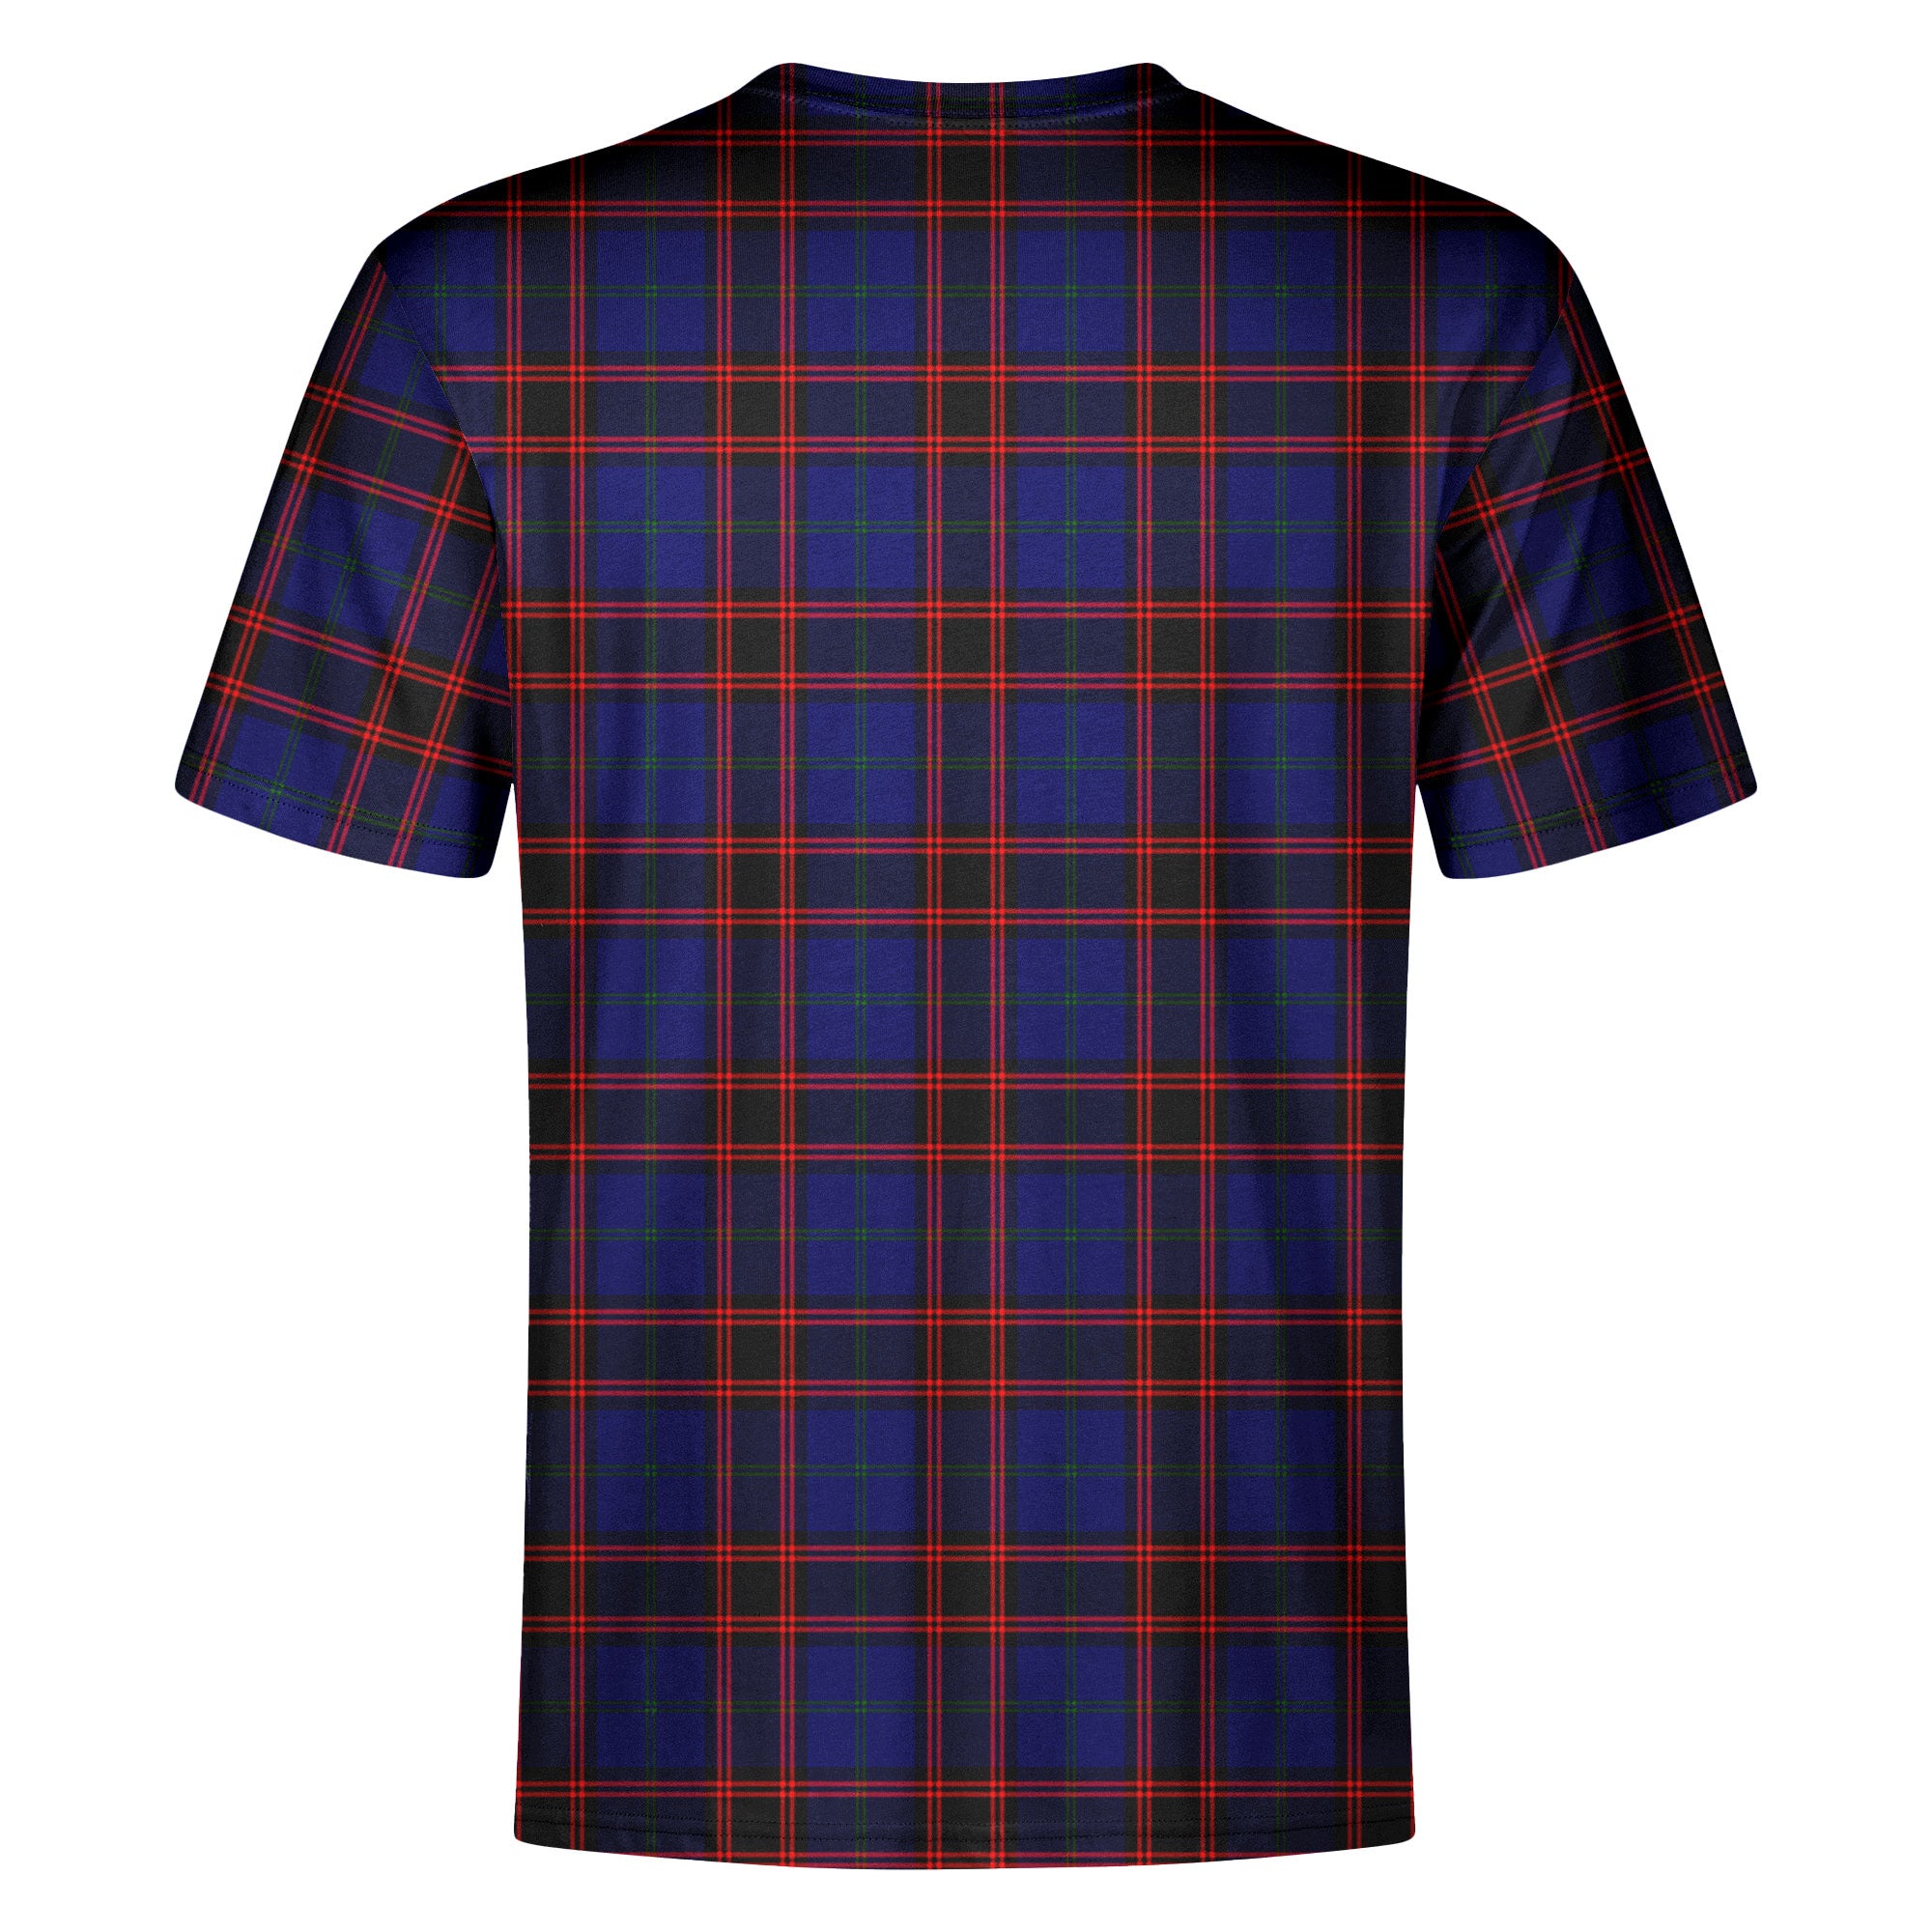 Home Modern Tartan Crest T-shirt